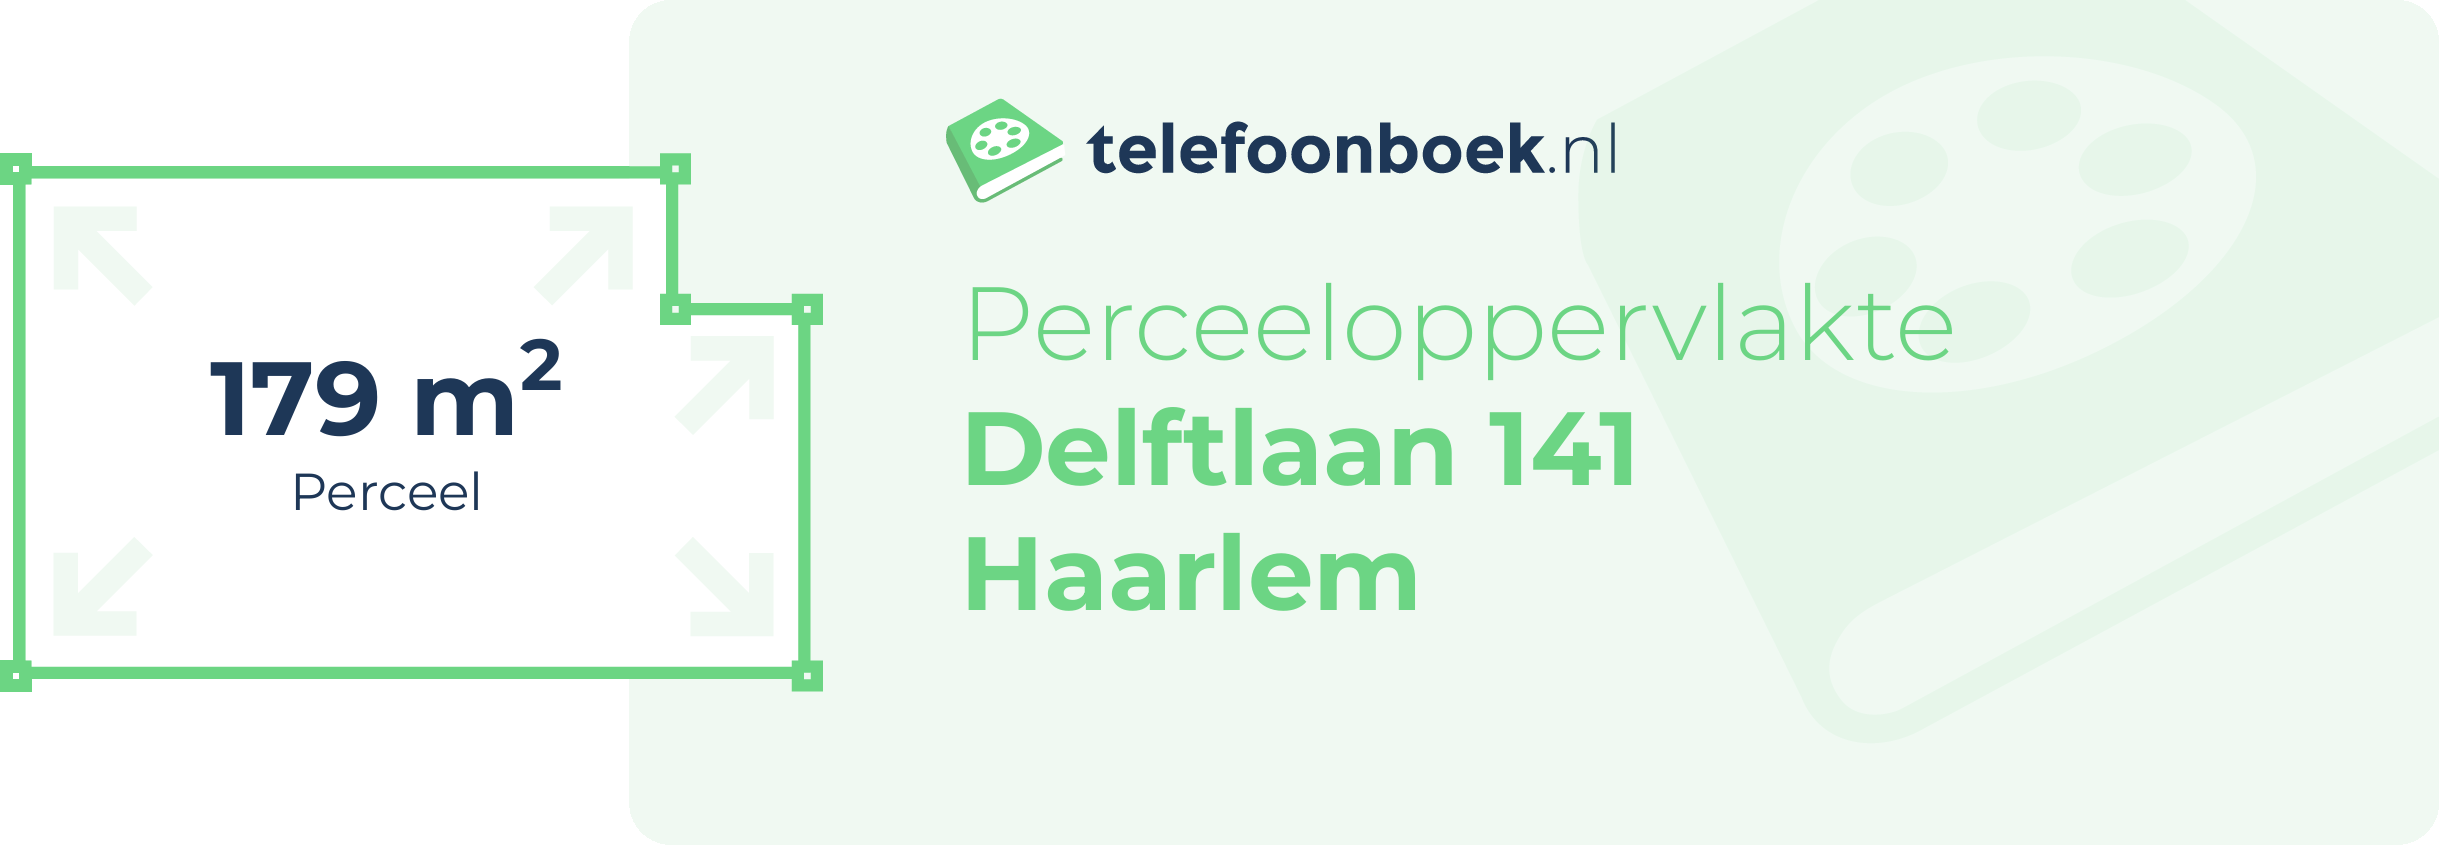 Perceeloppervlakte Delftlaan 141 Haarlem